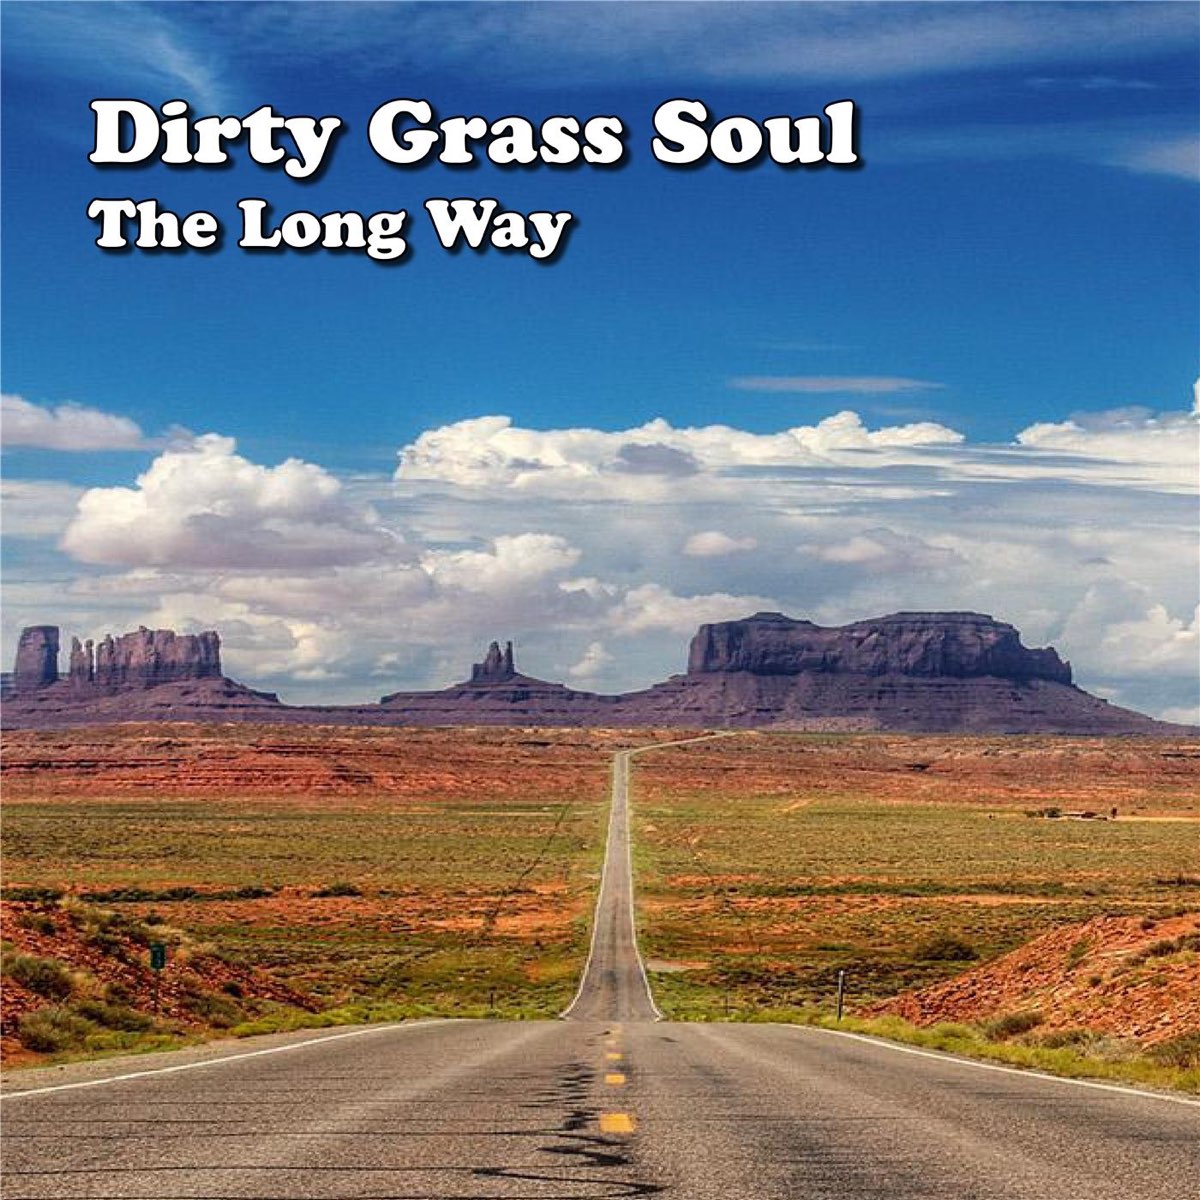 This long way. Long way. Обложка long way up. Soul grass. Dirty grass.